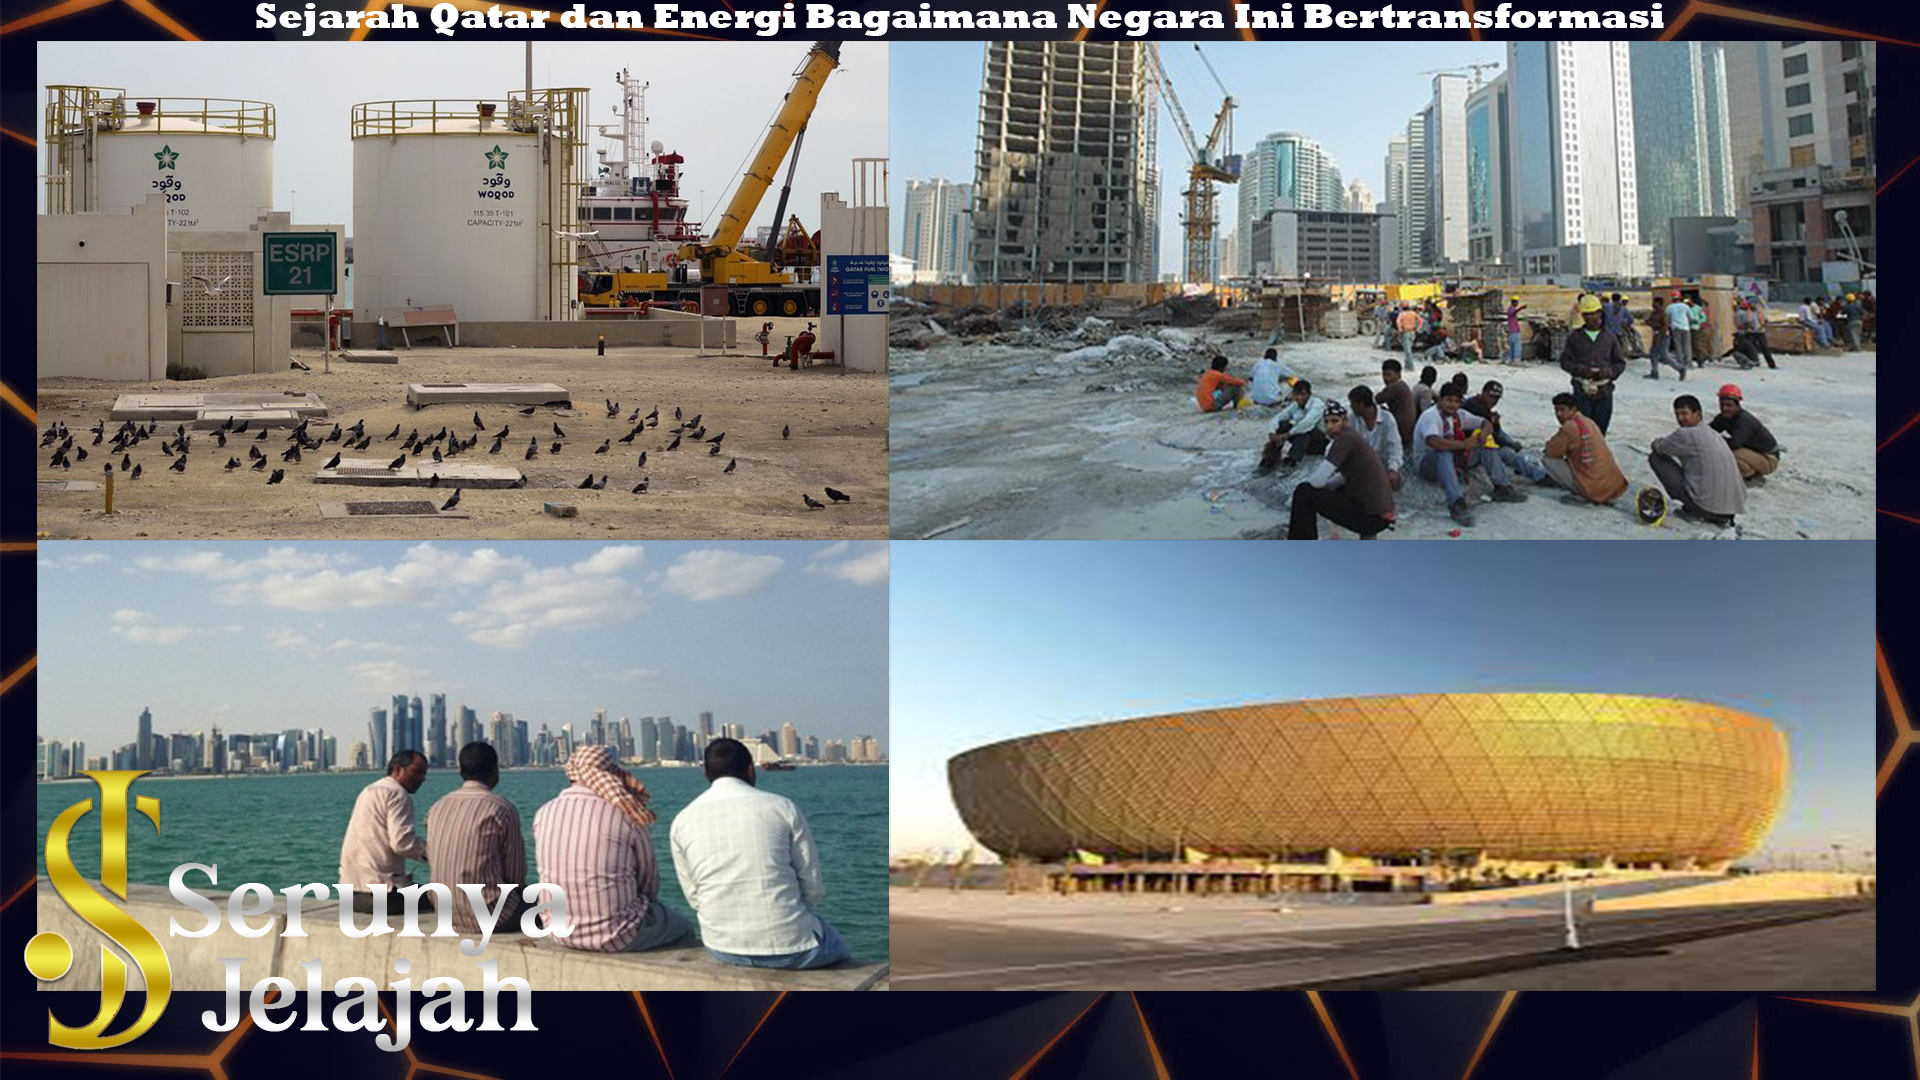 Sejarah Qatar dan Energi Bagaimana Negara Ini Bertransformasi